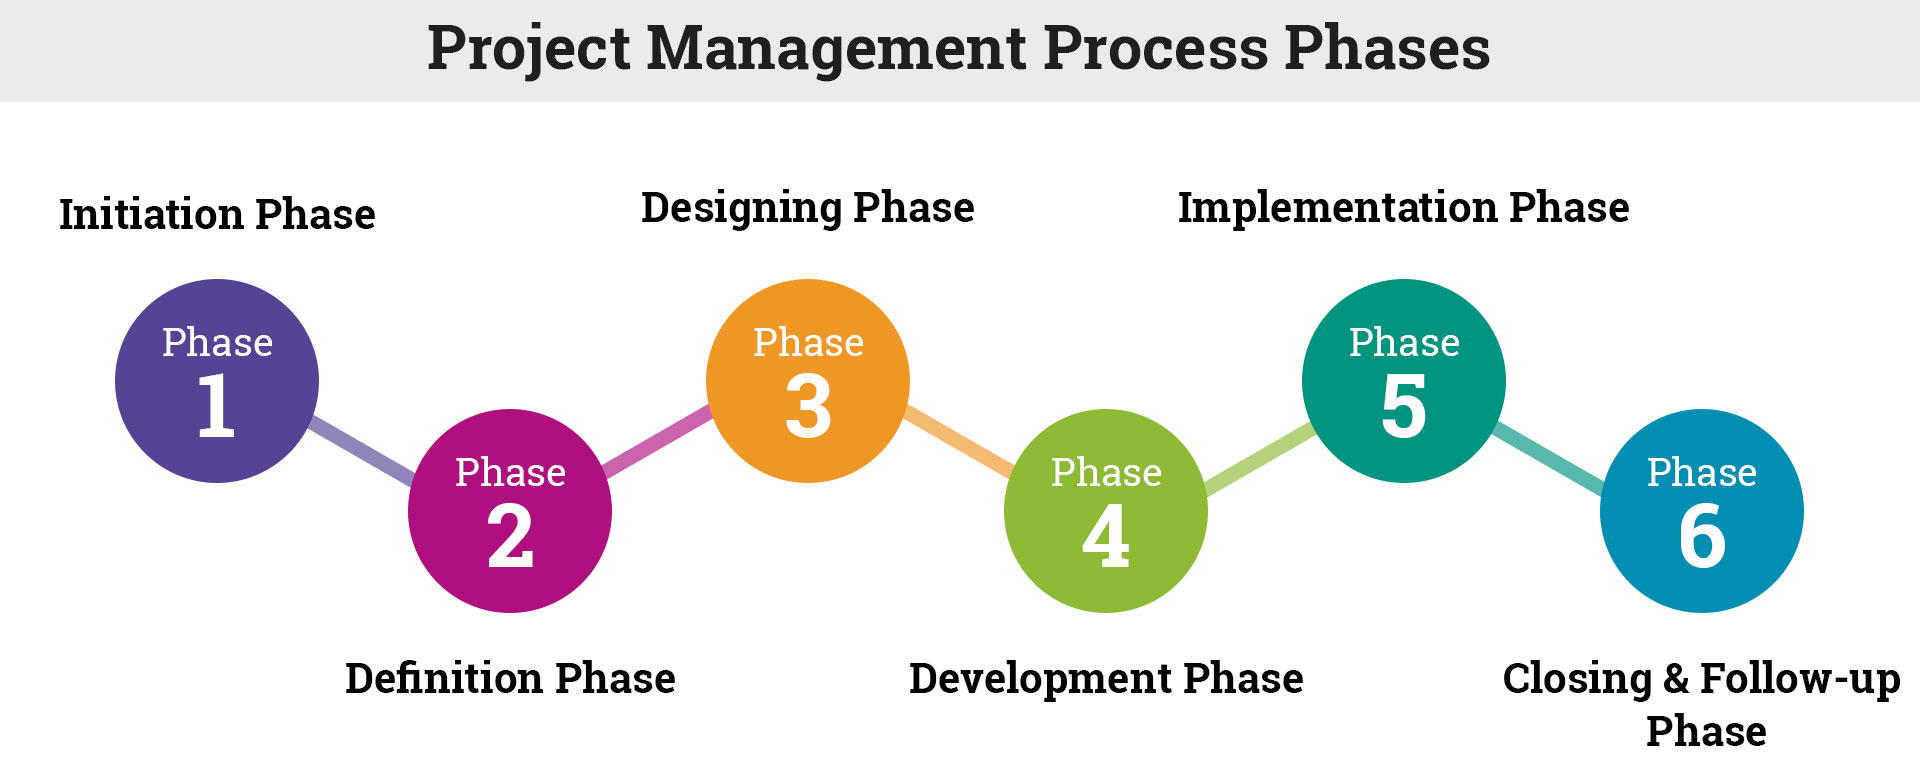 basic project management process